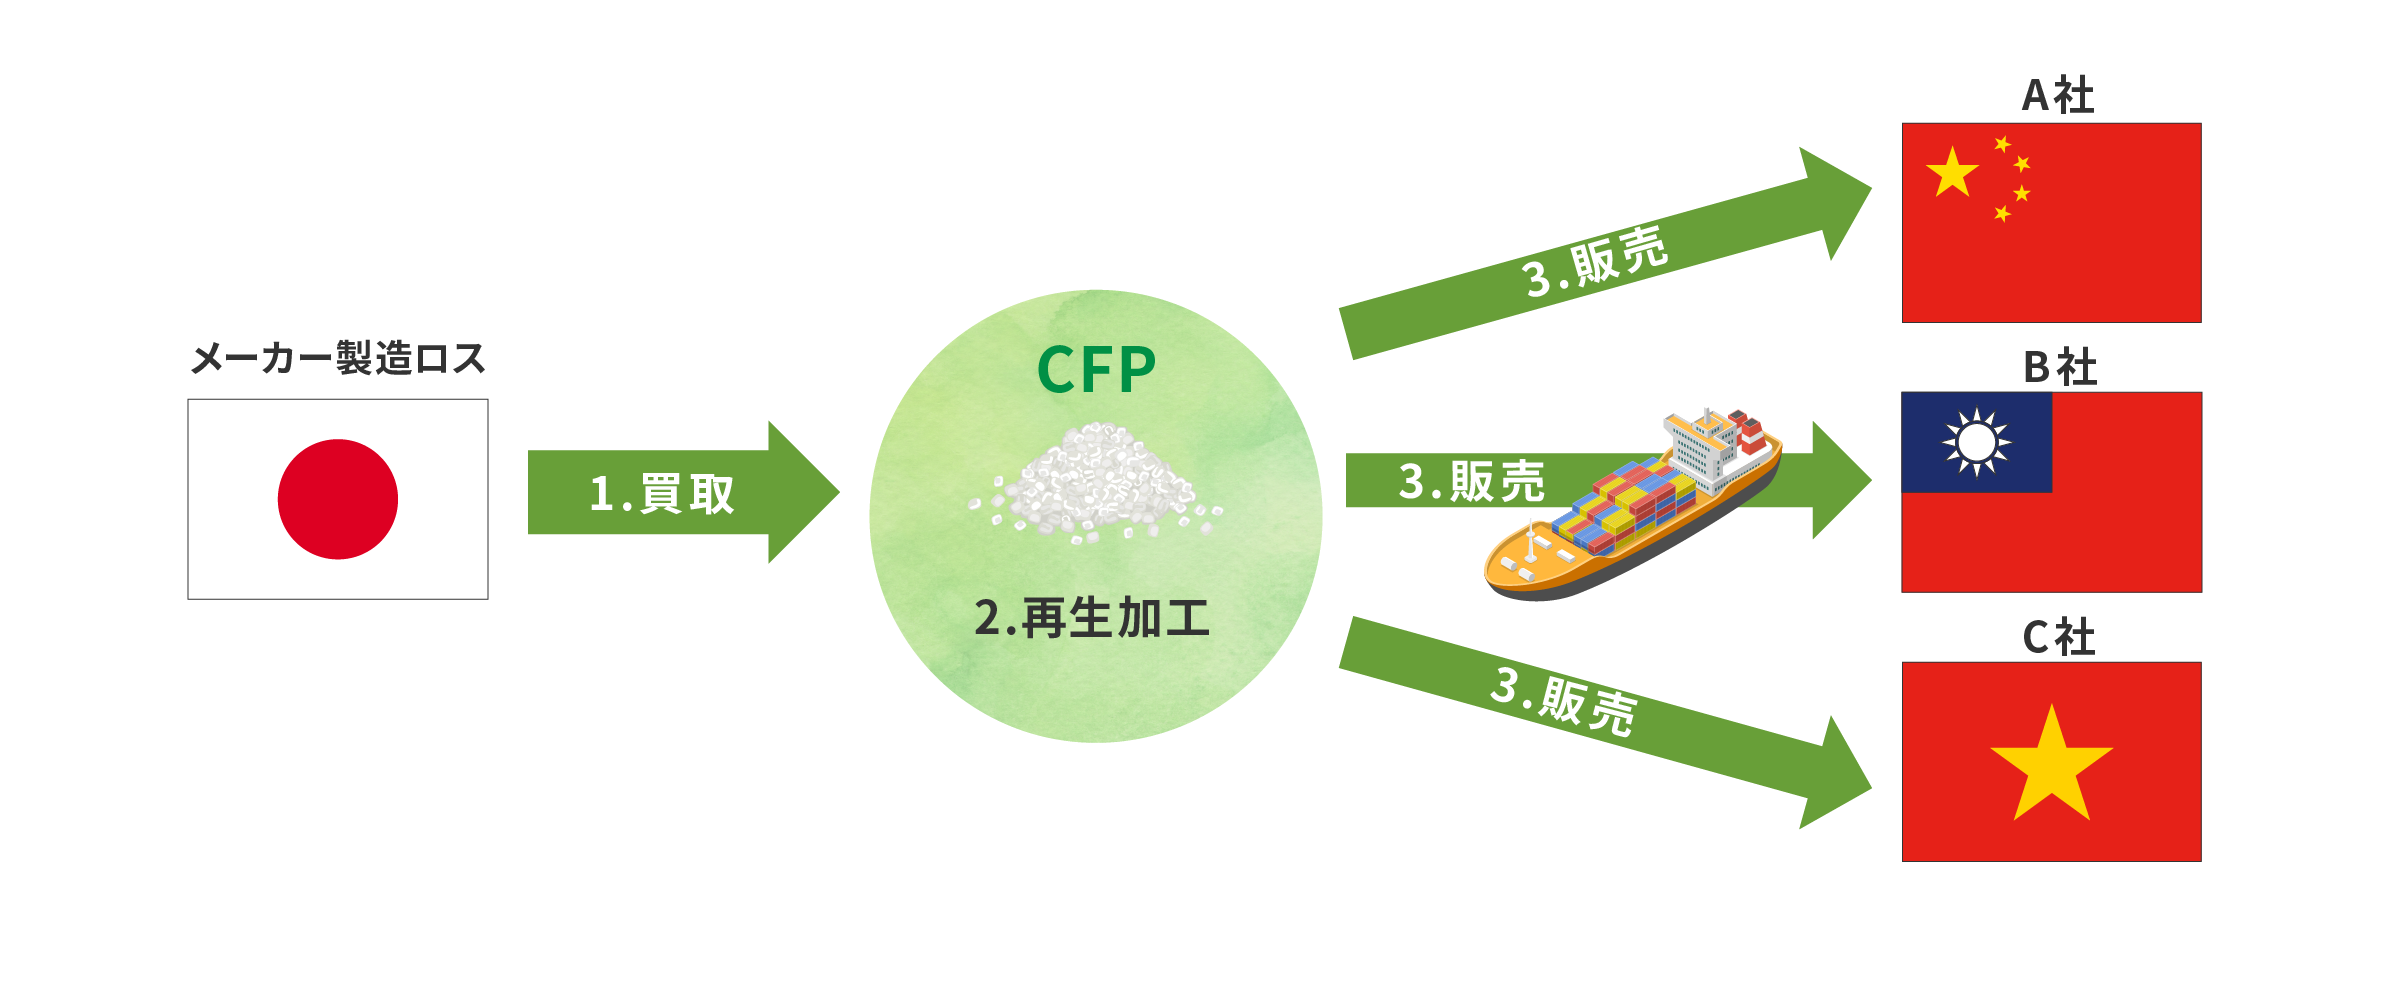 海外からPP再生ペレットの要望があり、日本国内品を販売